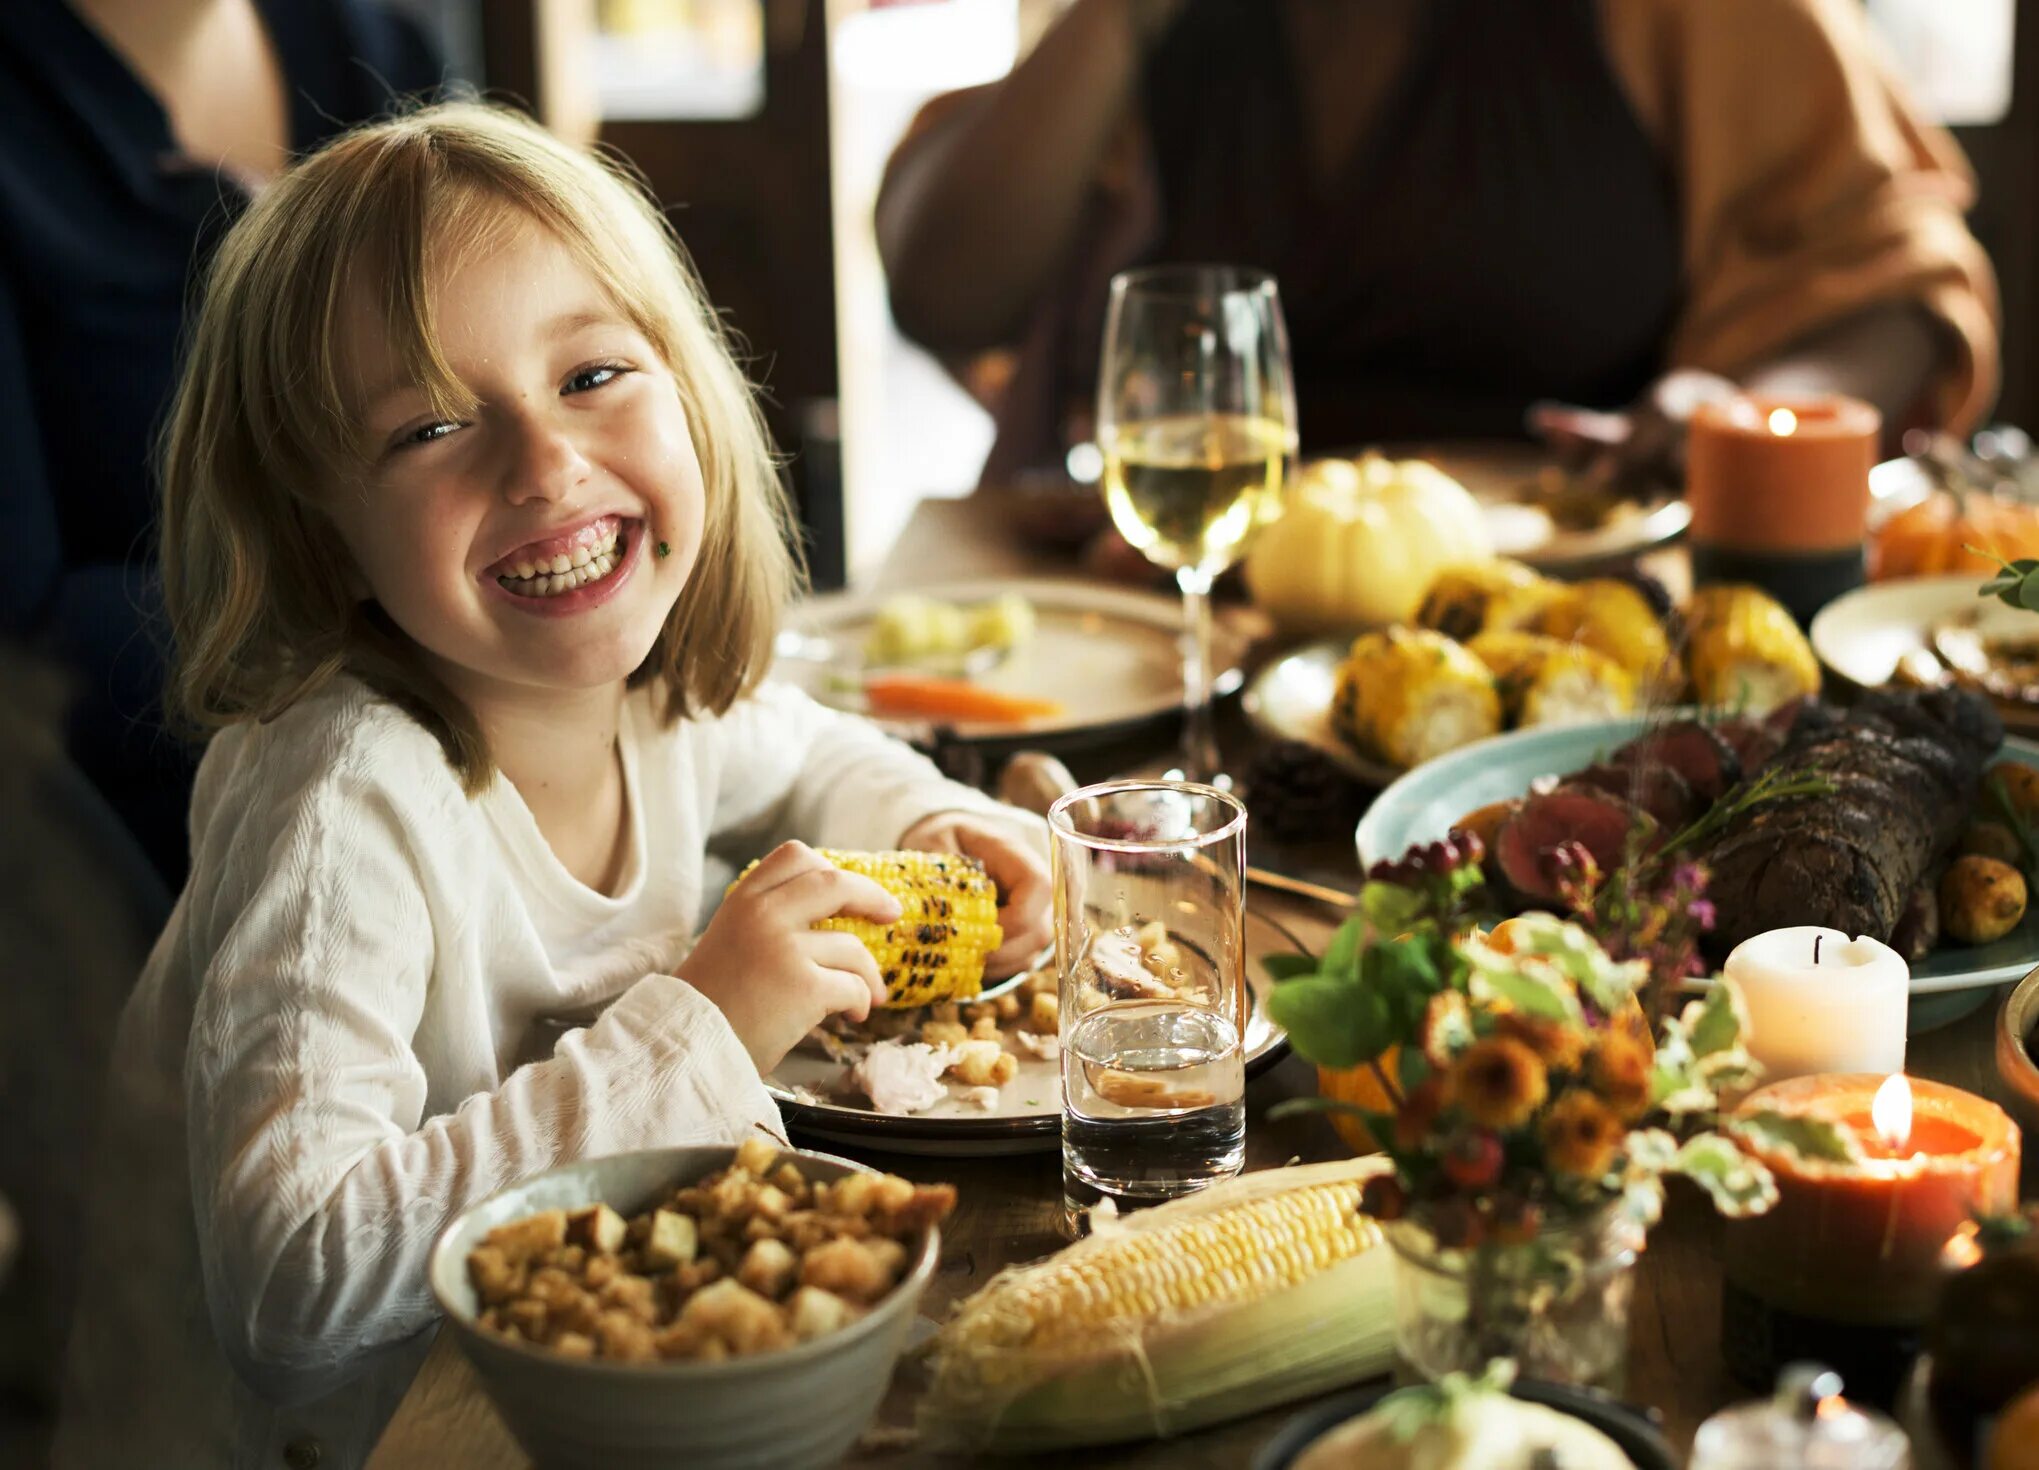 Еда развлечения. Еда как развлечение. Семья ест кукурузу за столом. Ребенок ест кукурузу. Girl eat Corn.